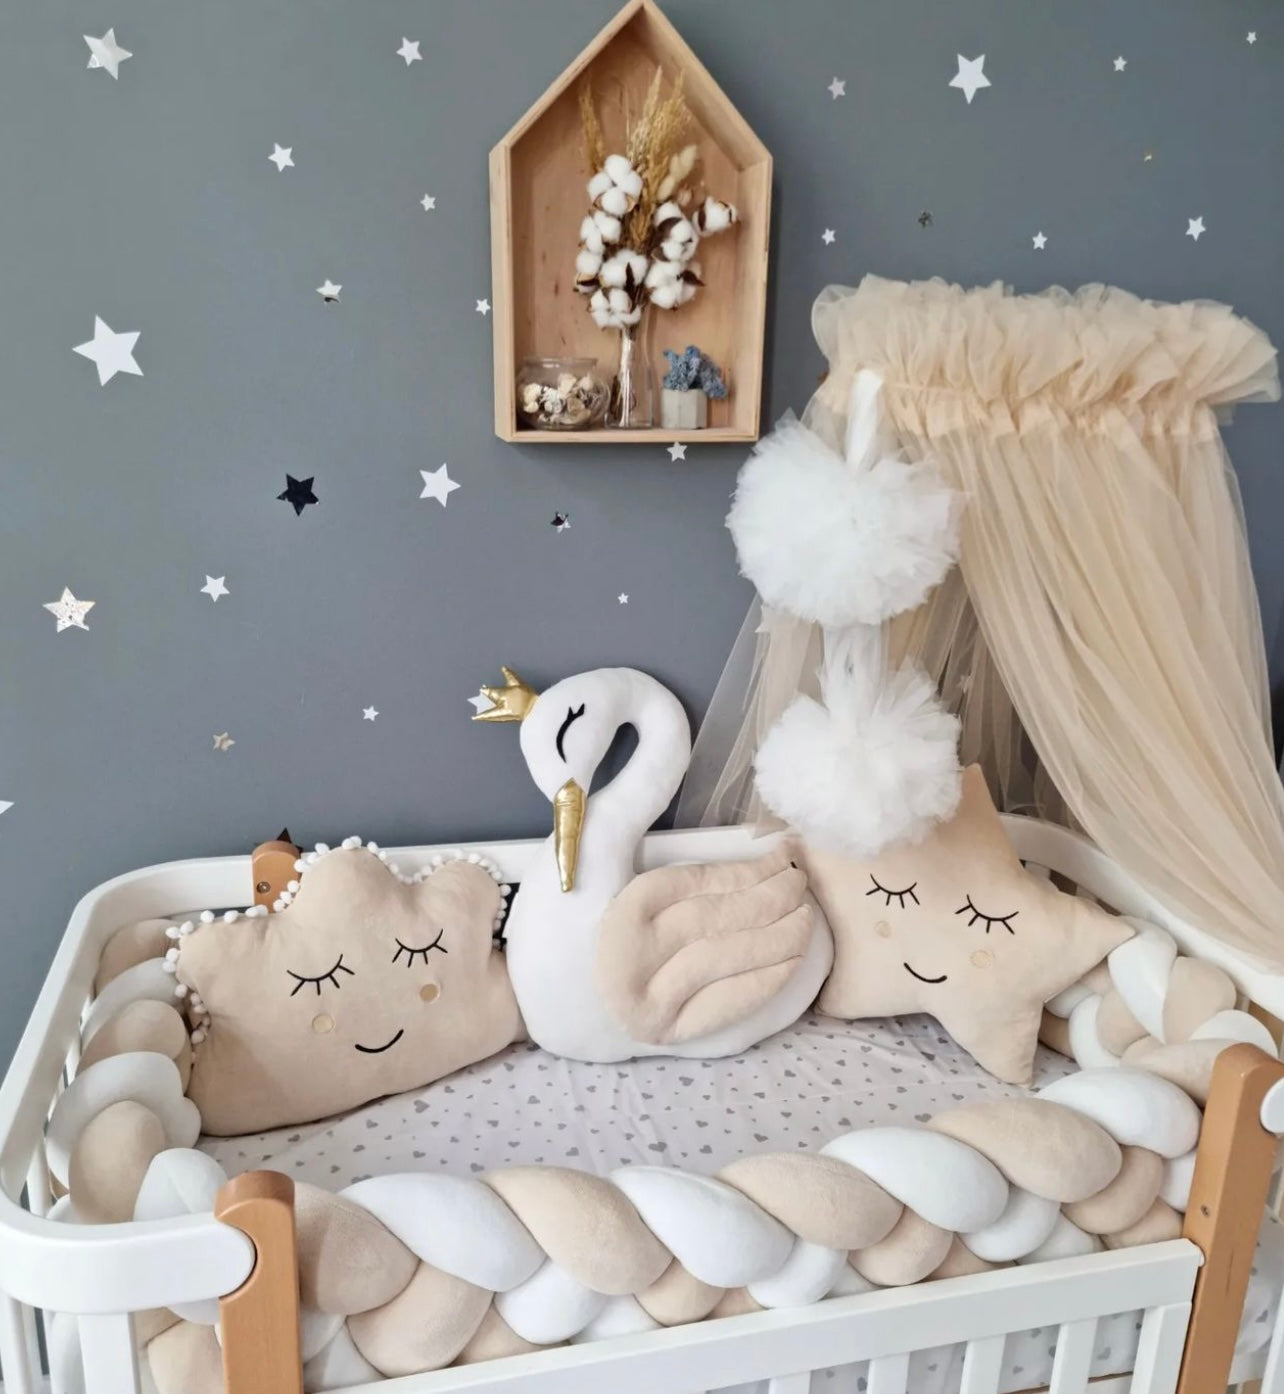 KIT COMPLET pour lit bébé Beige et Blanc – BabyBoom